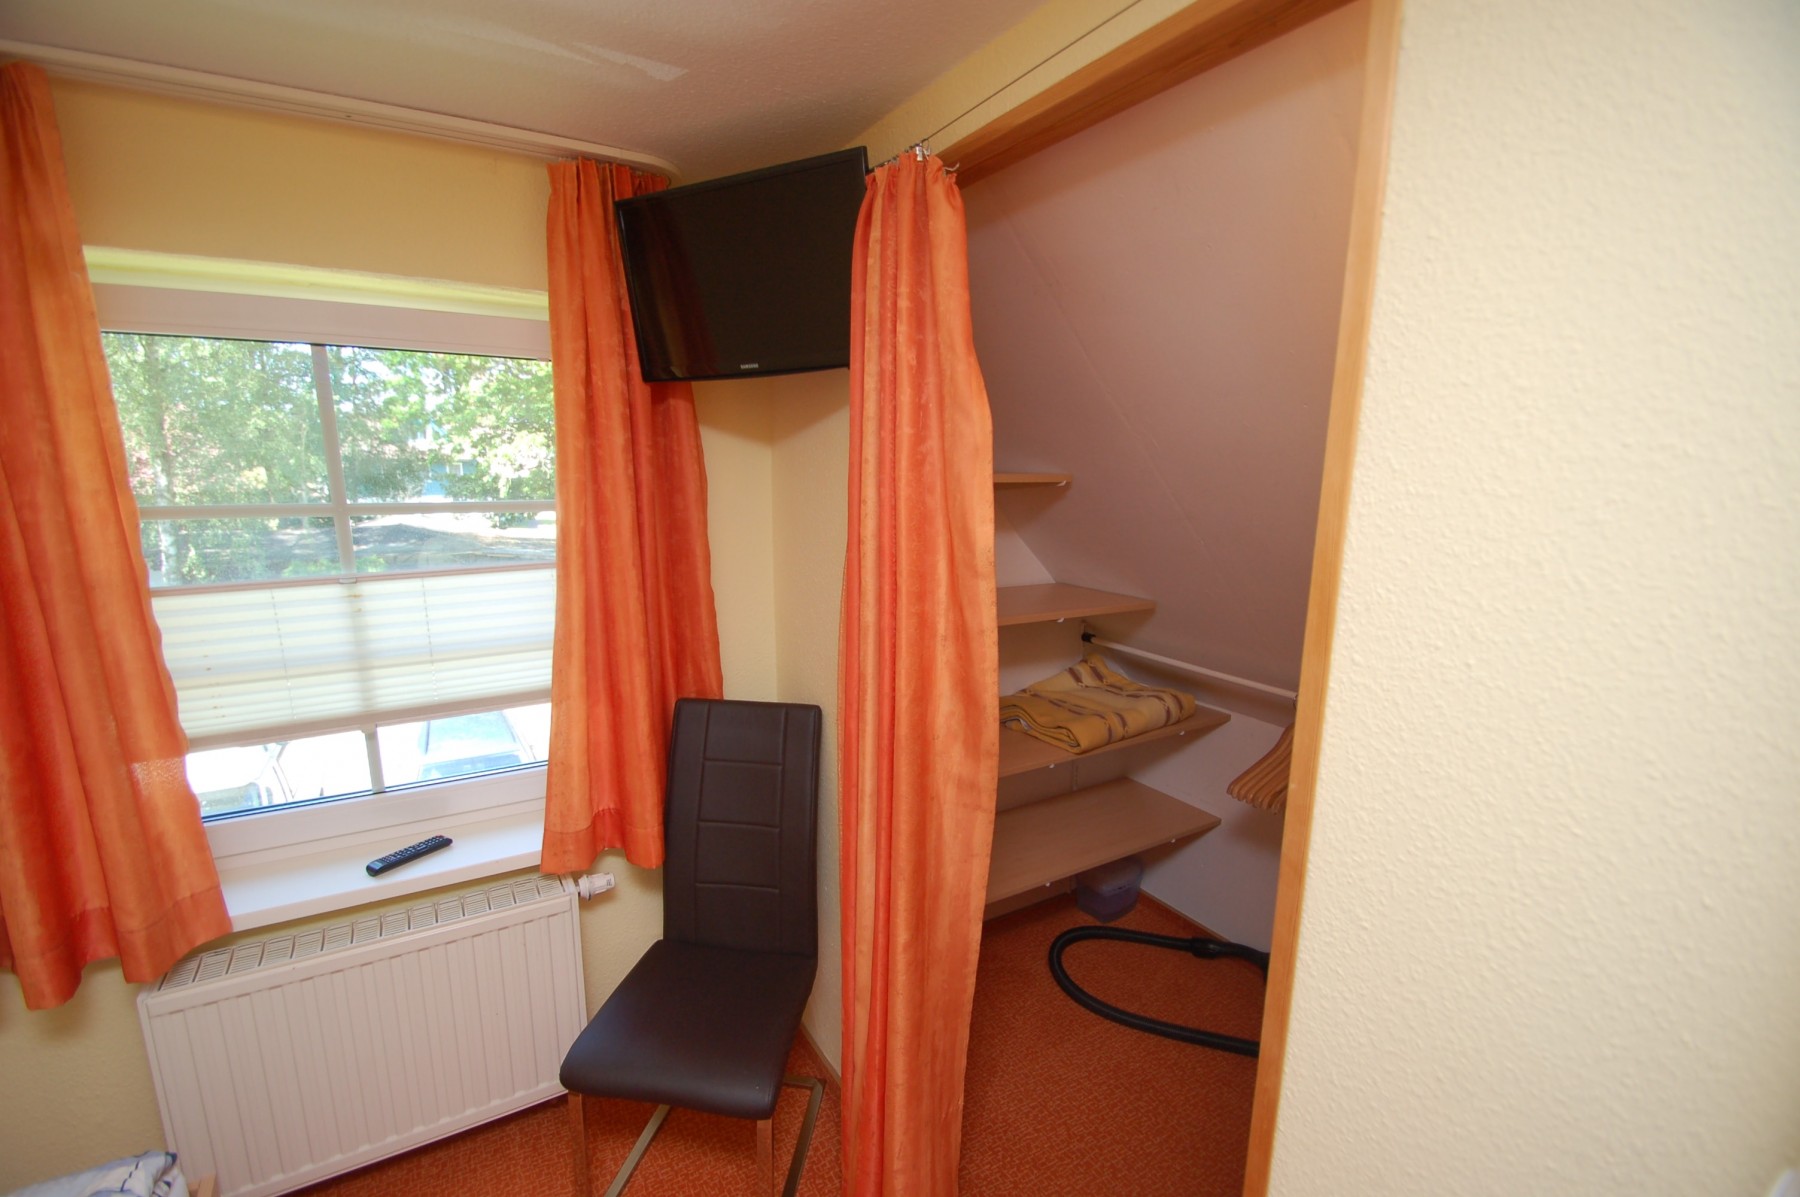 Schlafzimmer - Ecke mit TV und begehbarer Kleiderschrank